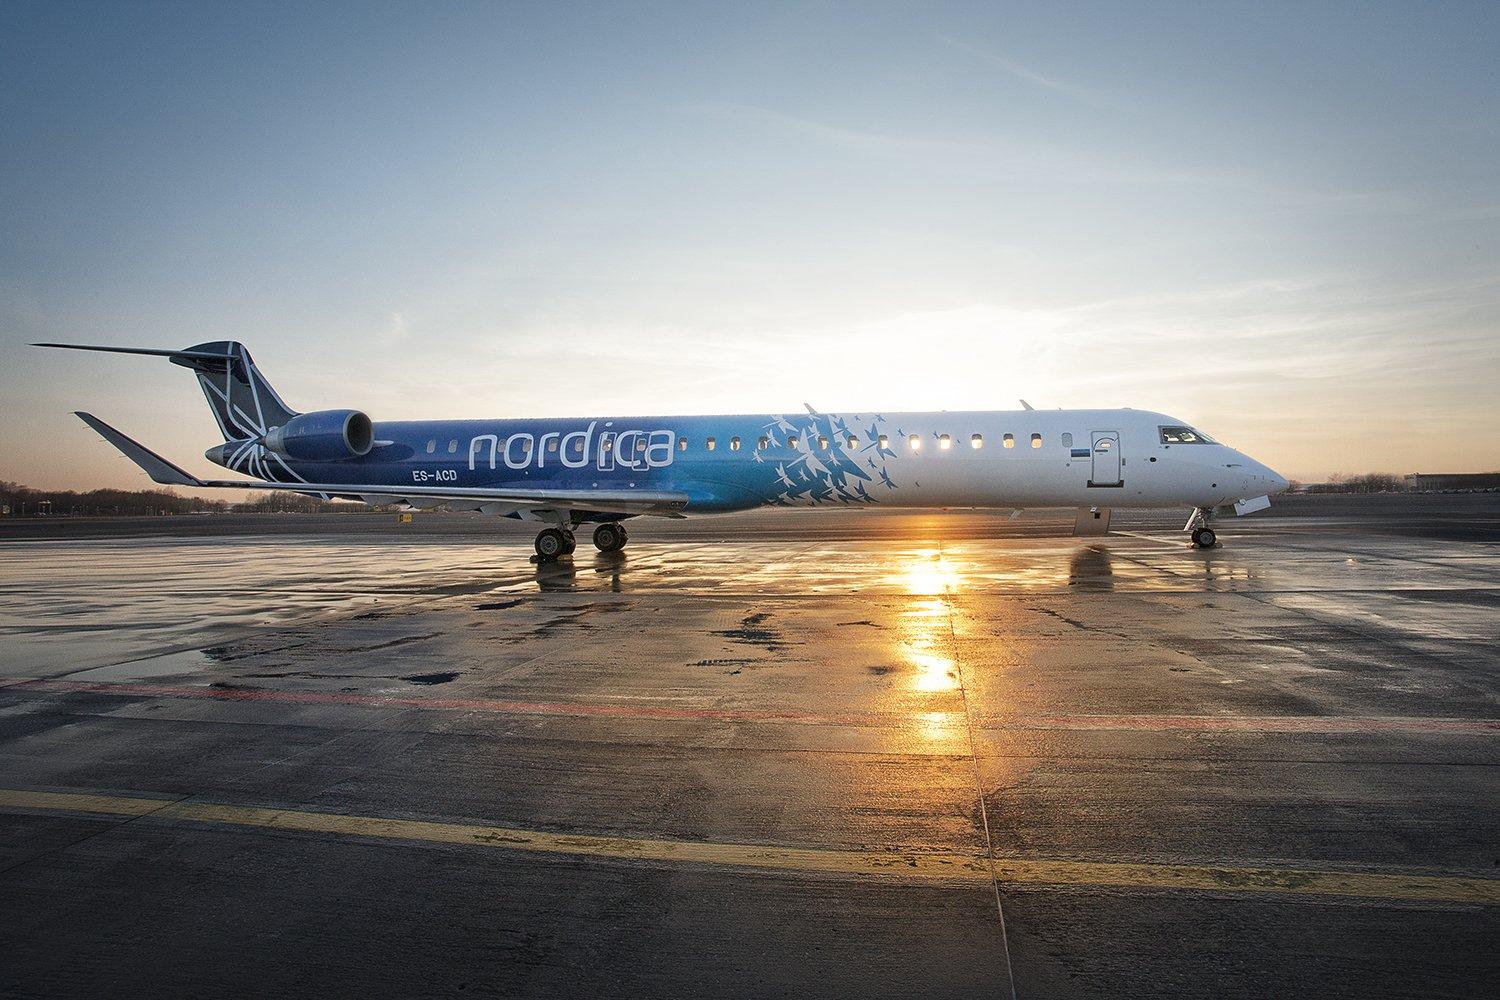 nordica aircraft